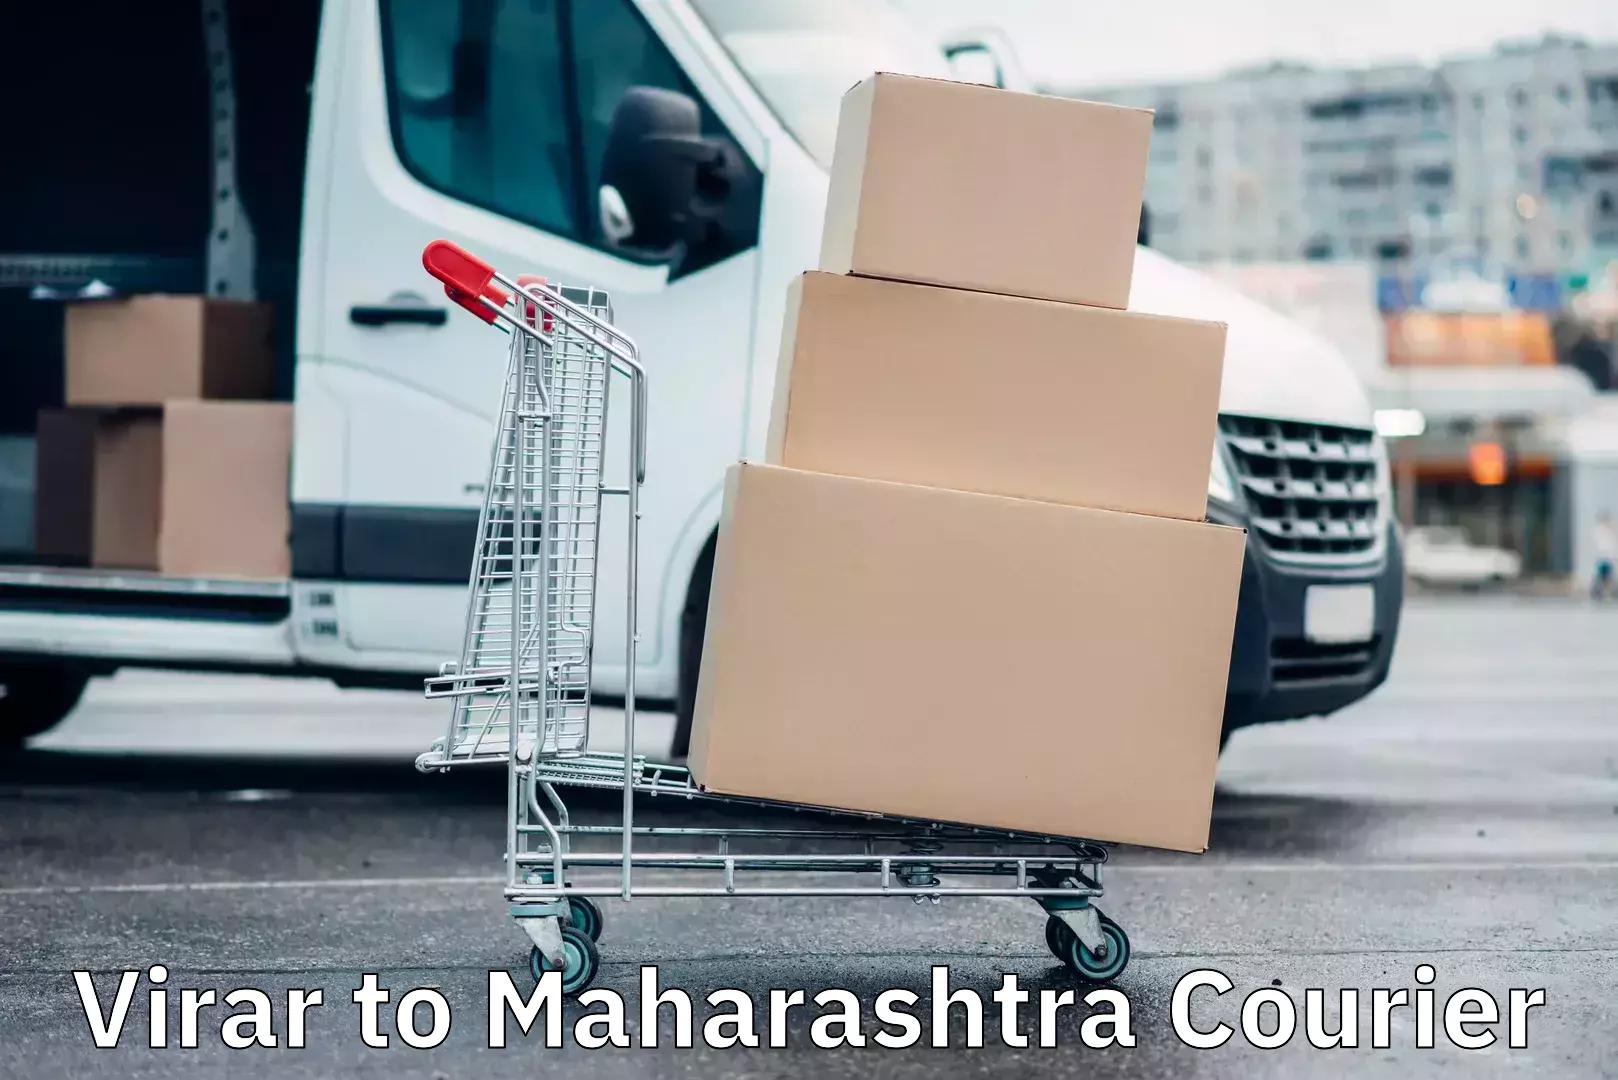 Express delivery capabilities in Virar to Maharashtra